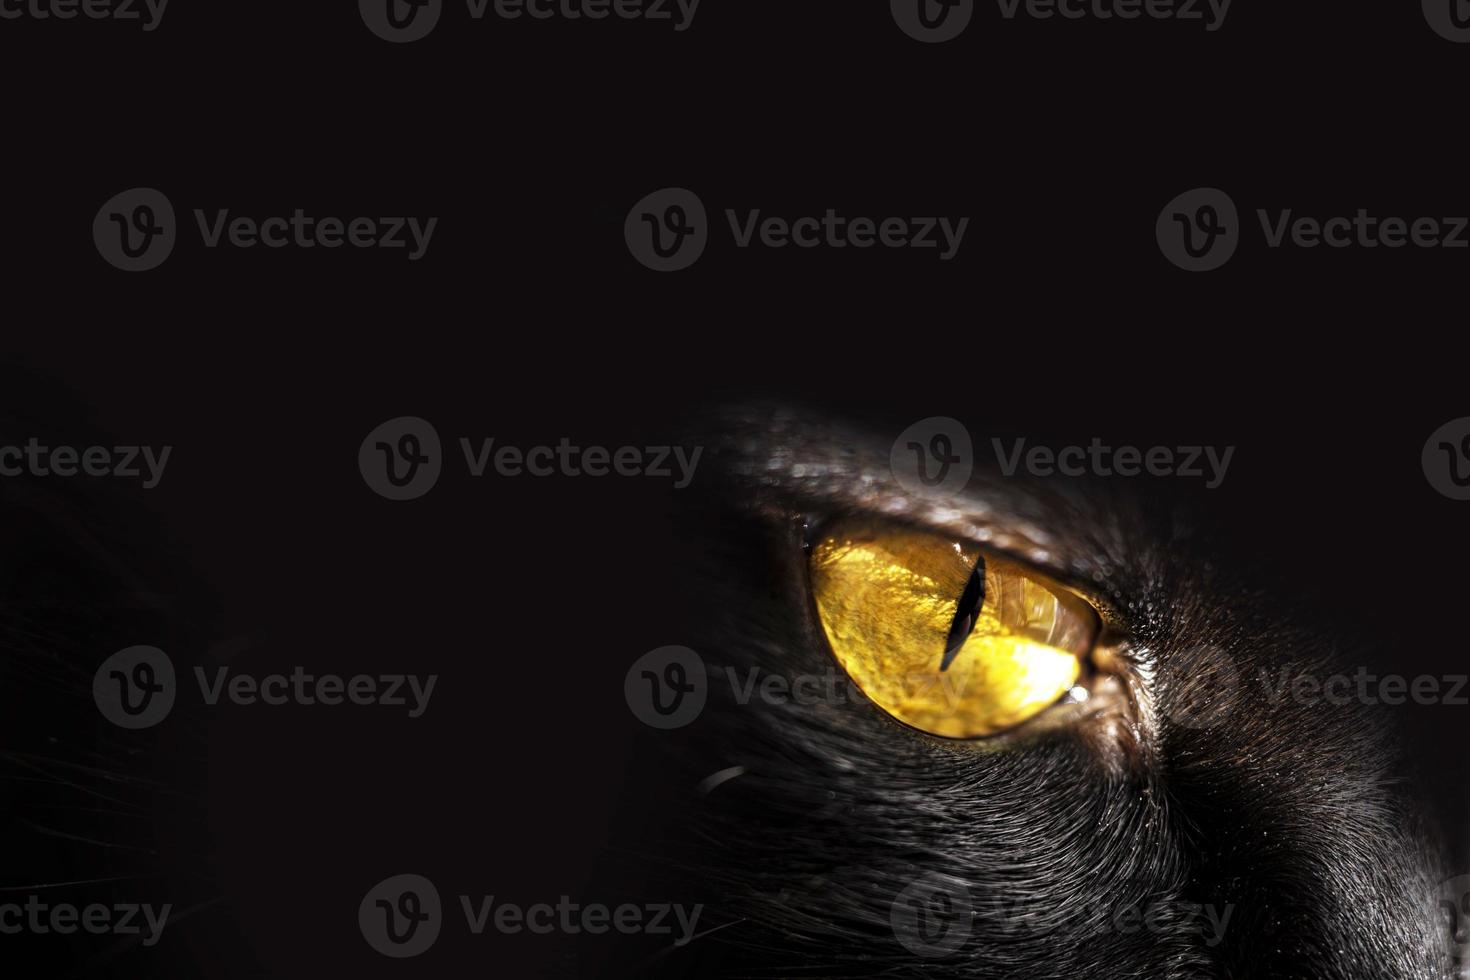 gato preto com olhos amarelos. bicho de estimação. foto